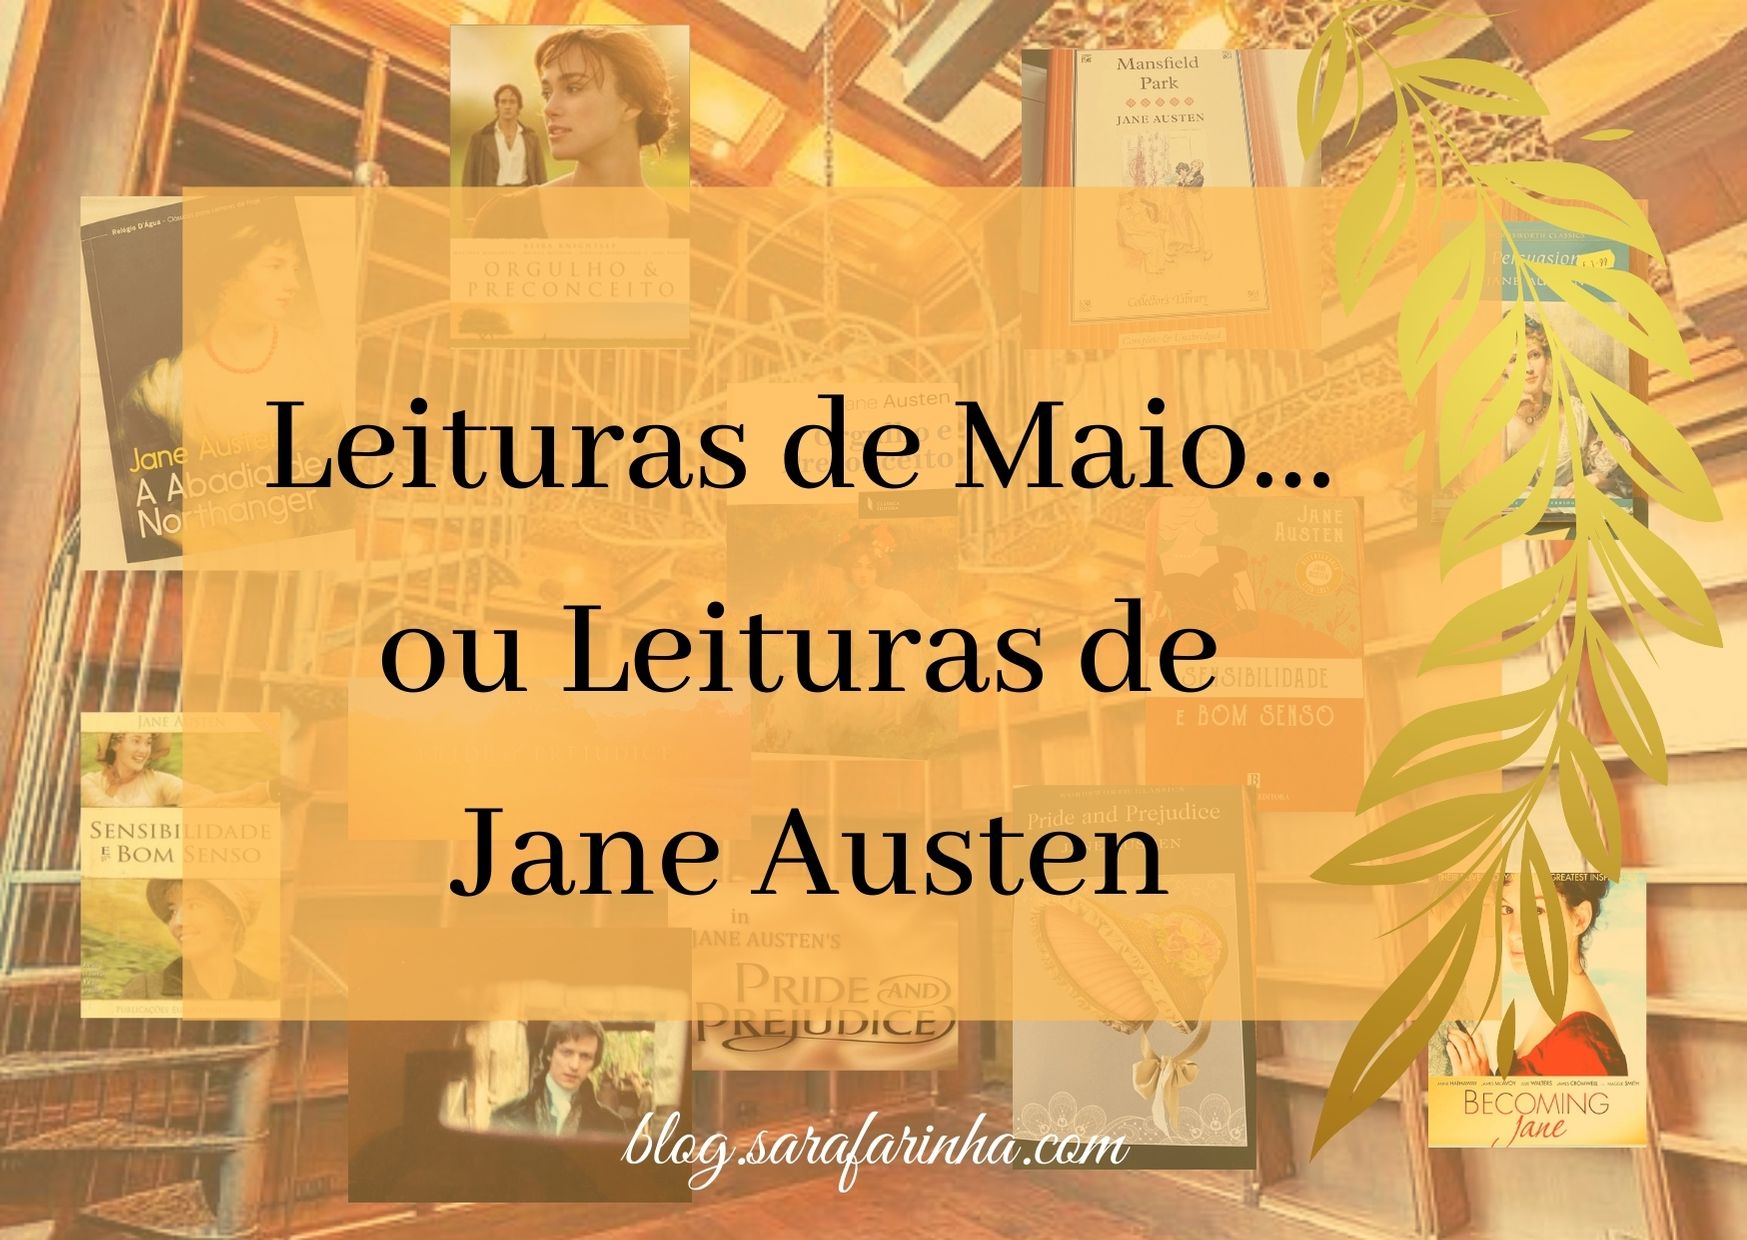 Jane Austen leituras